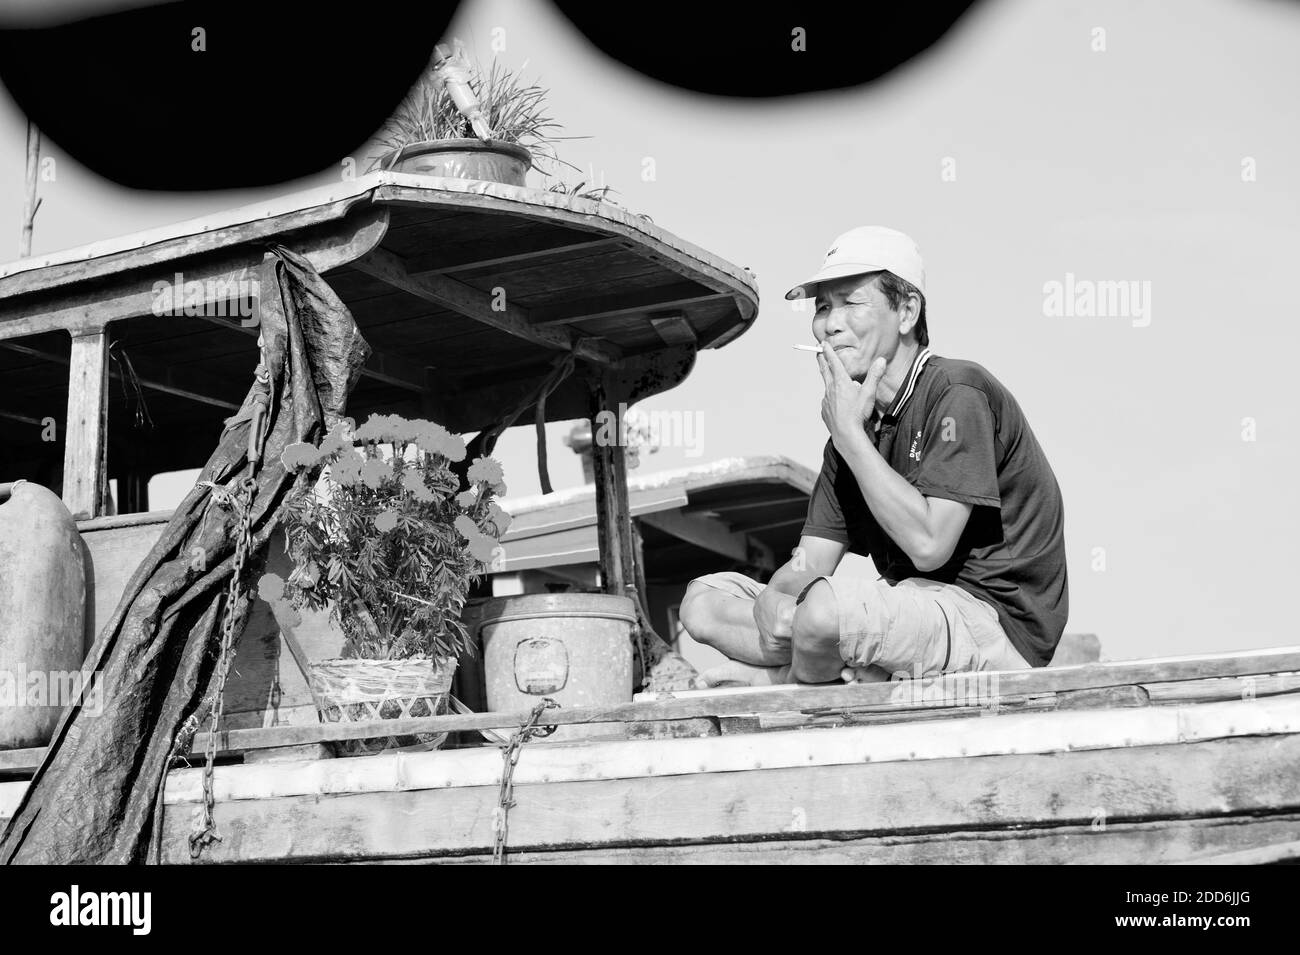 Noir et blanc photo d'un propriétaire de bateau prenant une pause au marché flottant CAN Tho, Delta du Mékong, Vietnam, Asie du Sud-est Banque D'Images